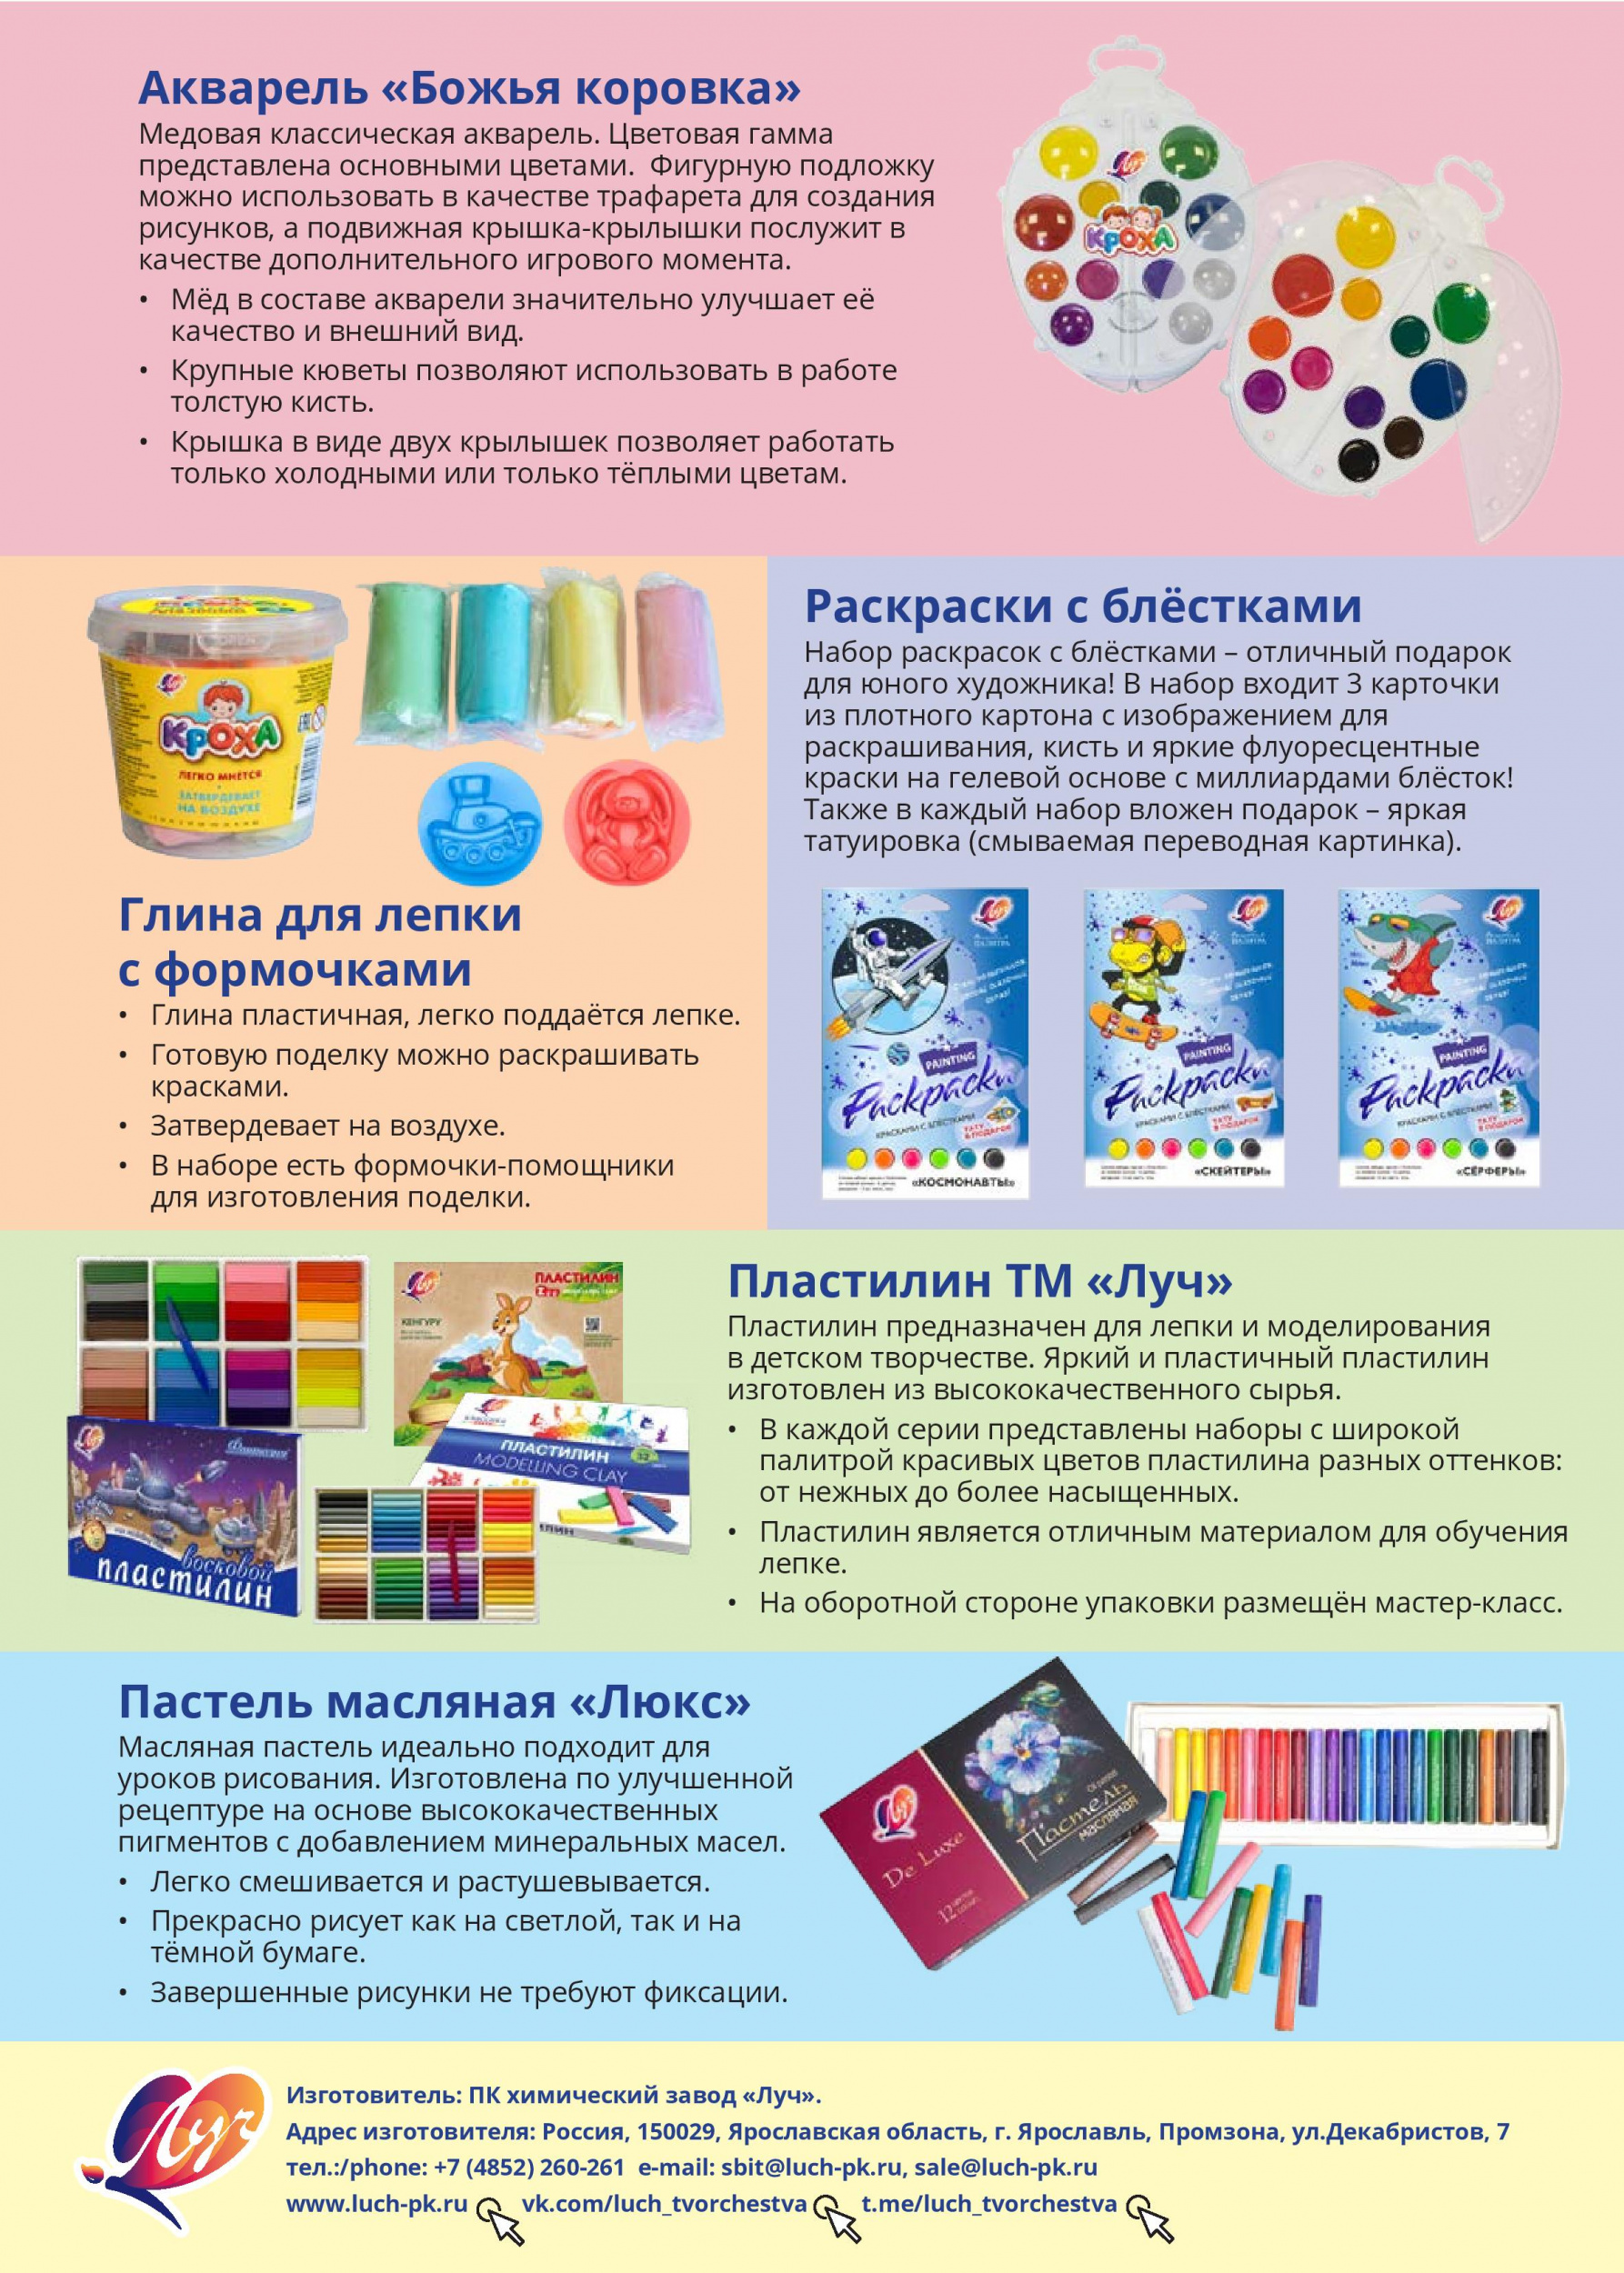 Компания «Луч» – российский производитель товаров для детского творчества и хобби